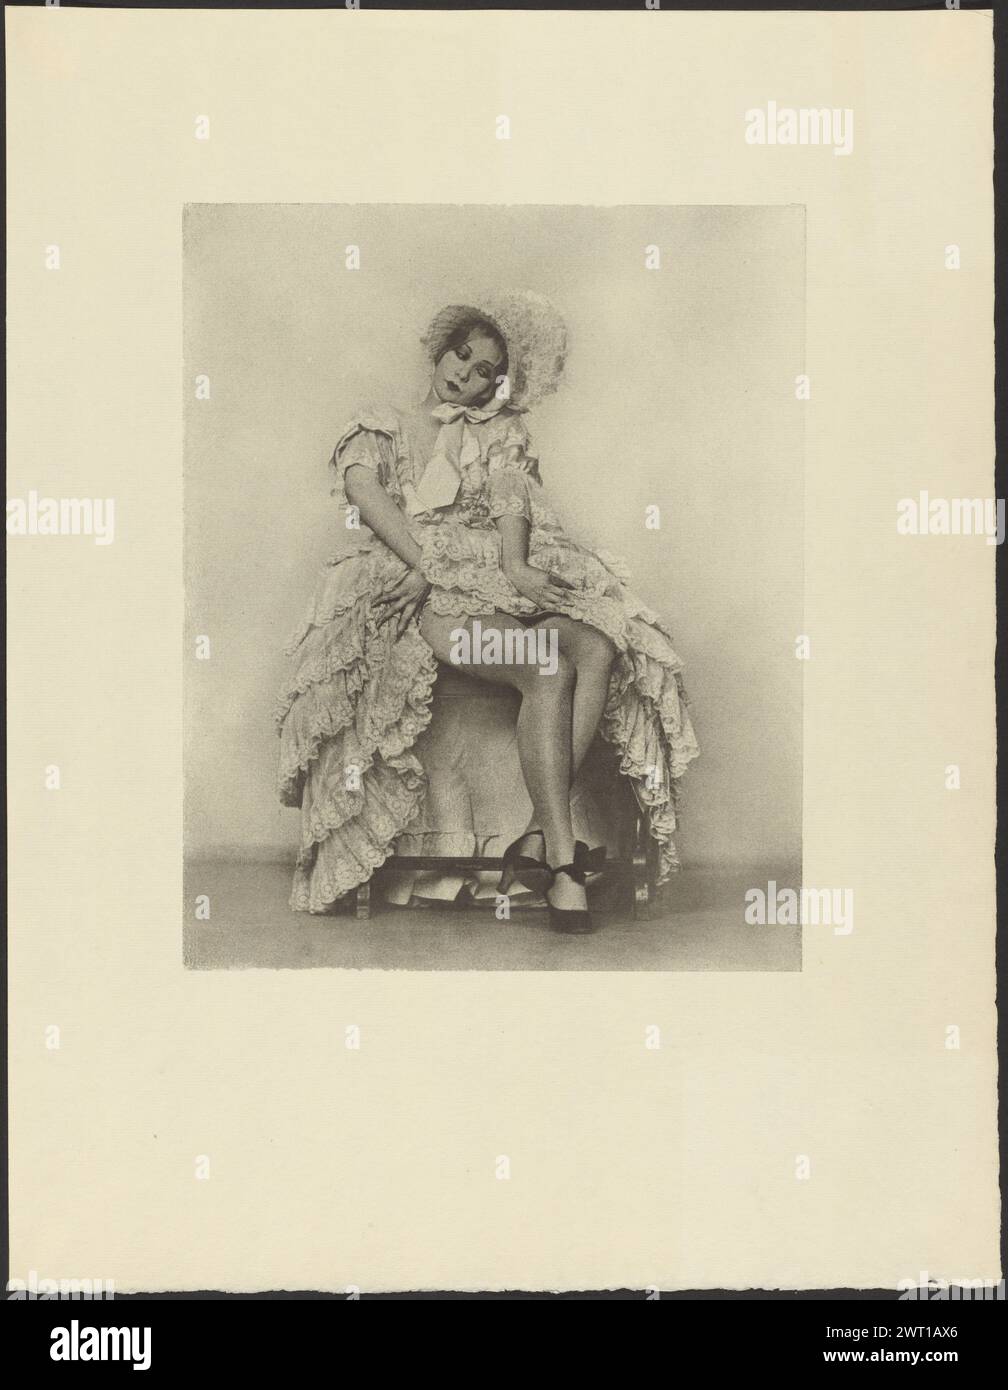 Donna seduta in un abito con volant con espressione del viso Coquettish. Arthur F. Kales, fotografo (americano, 1881 - 1936) circa 1920 (verso, foglio) inciso in matita blu, in alto a sinistra: '81' Foto Stock